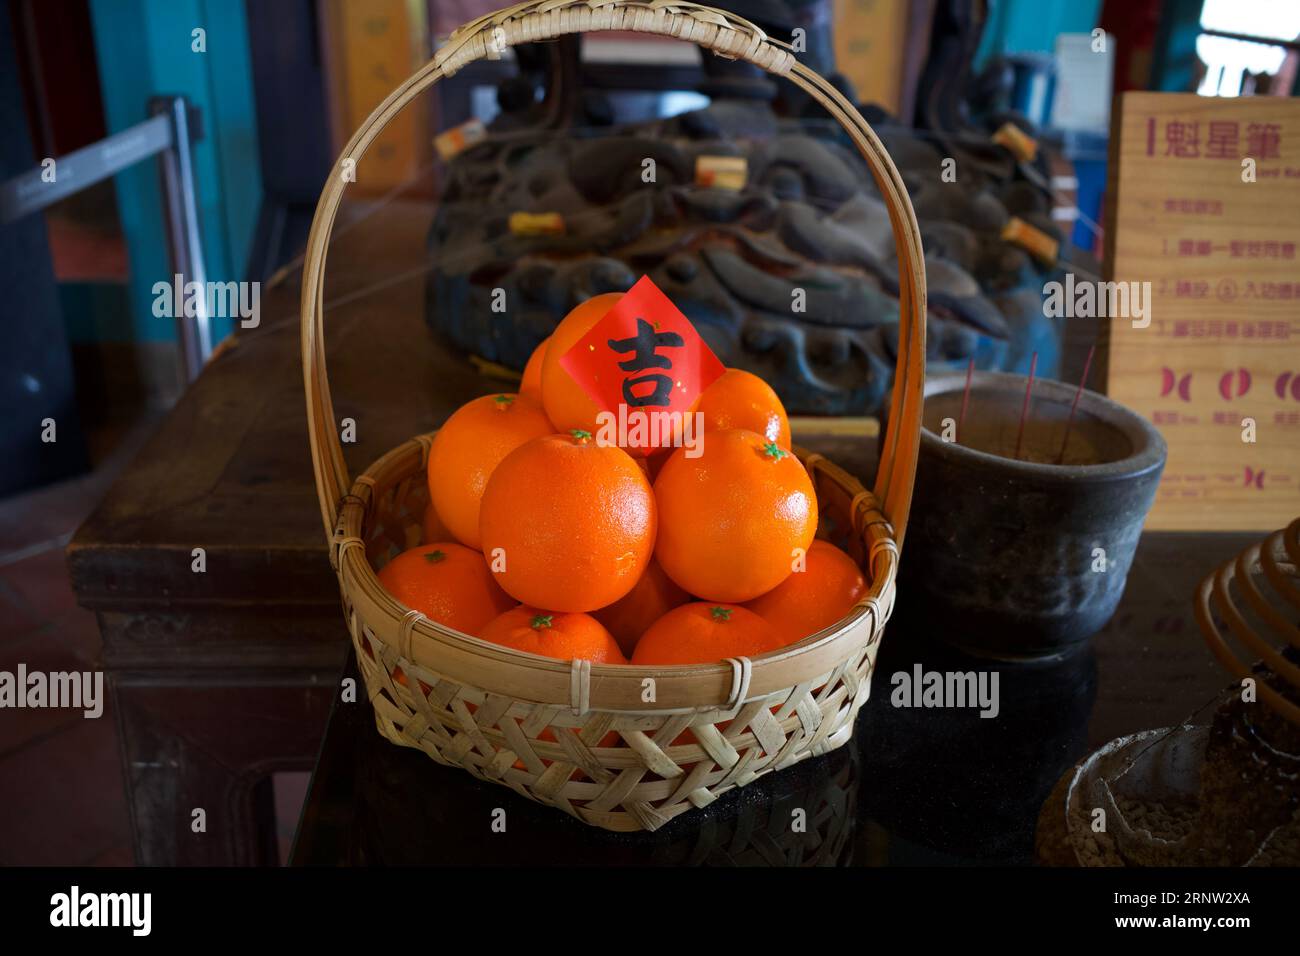 Un panier de mandarines a été placé sur une table d'un sanctuaire. Le papier rouge sur le dessus est un caractère chinois qui signifie auspicieux. Banque D'Images